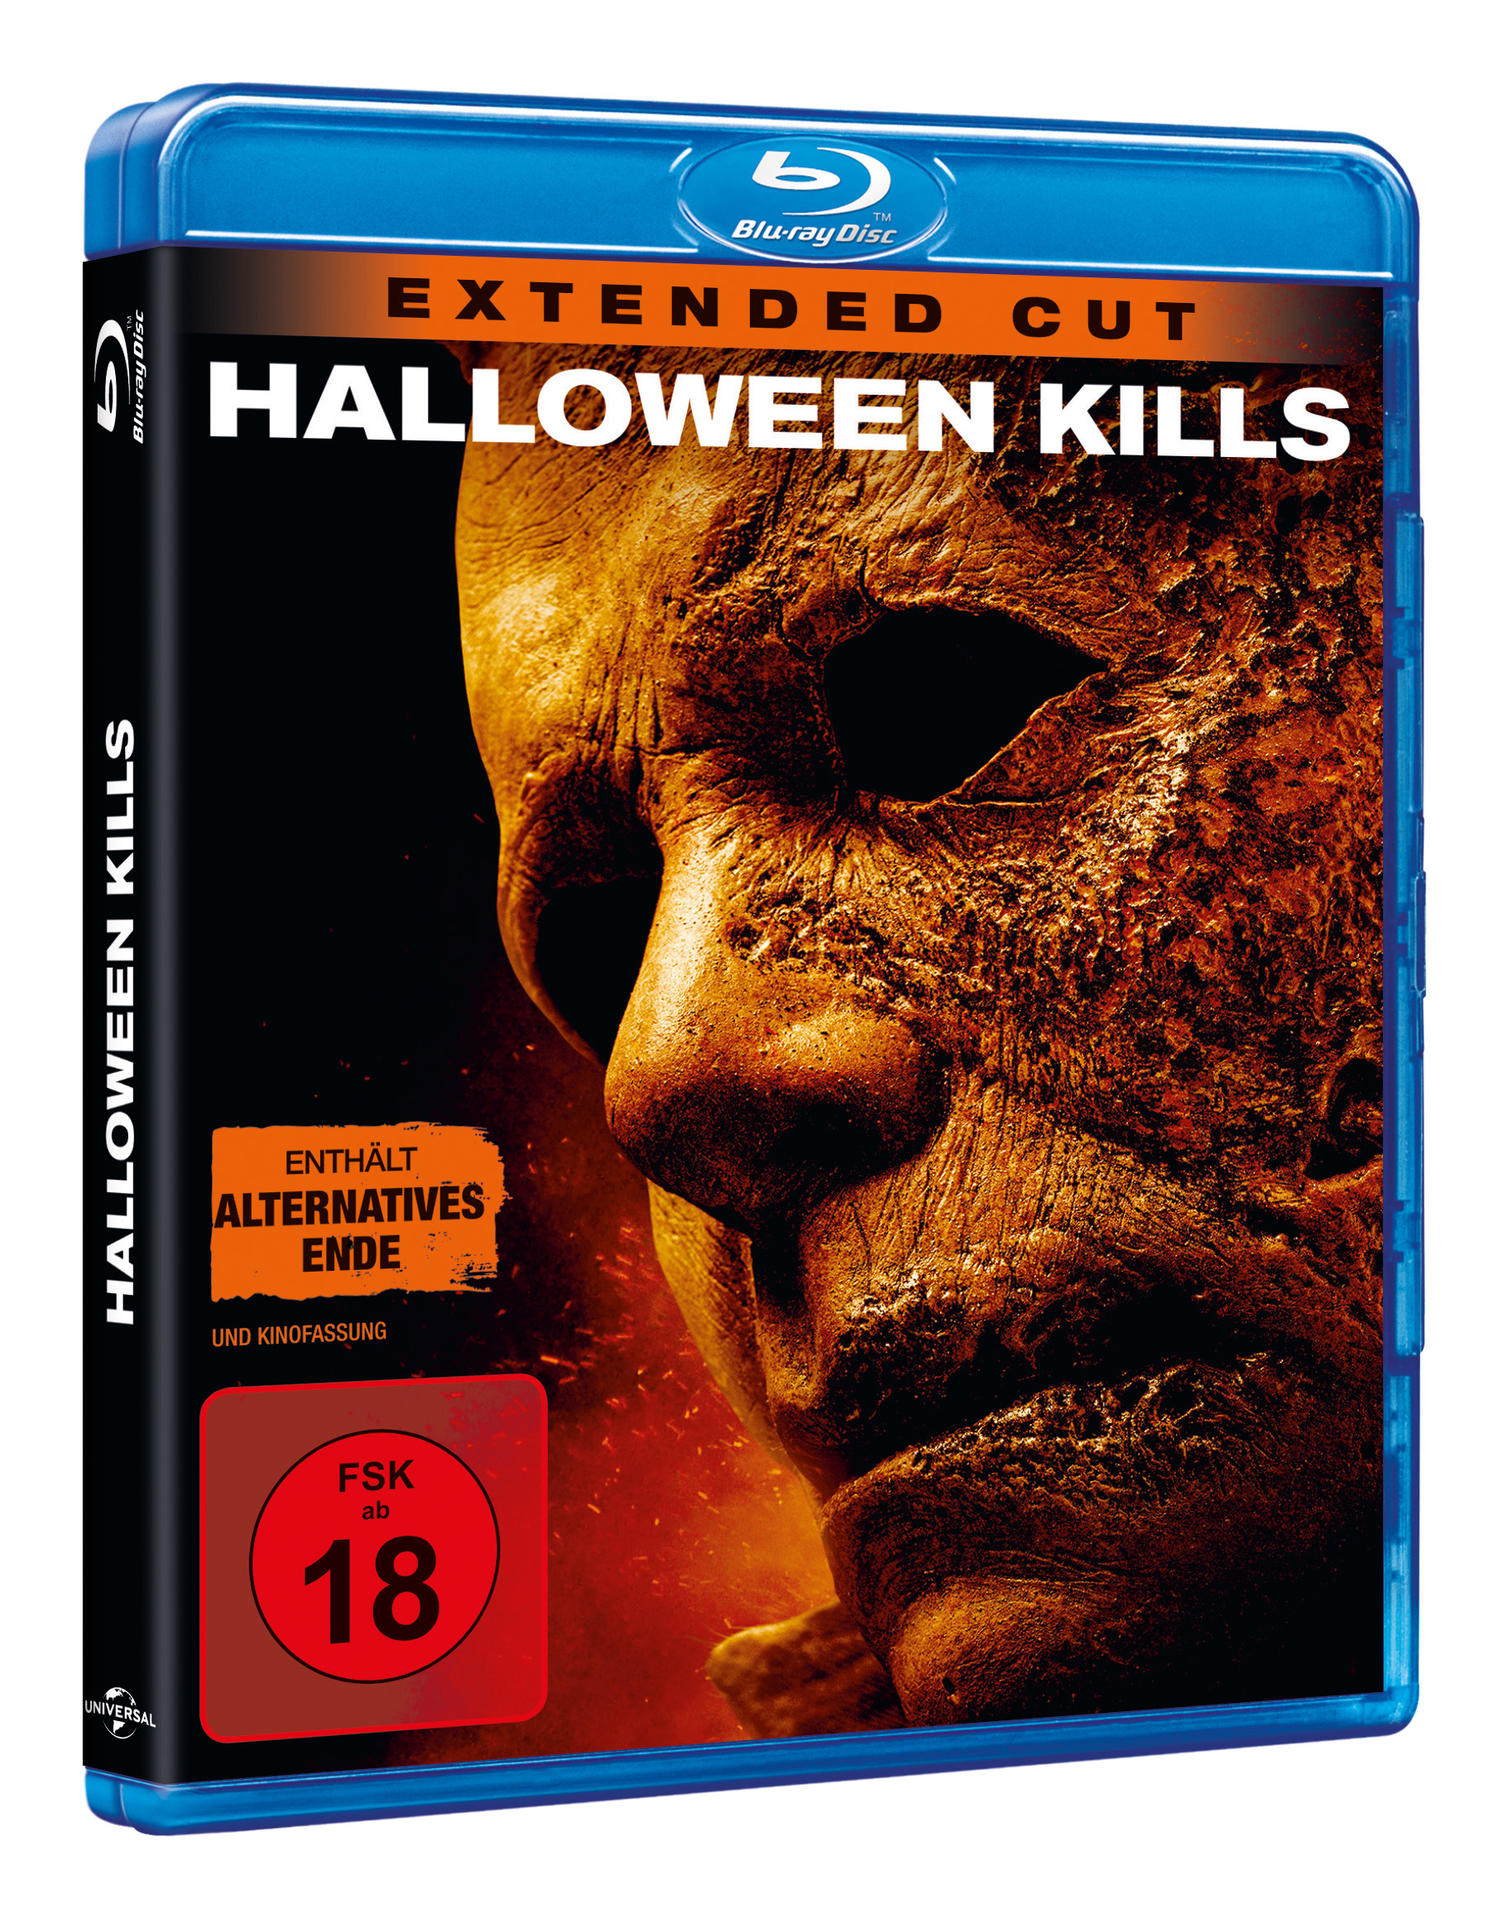 Halloween Blu-ray Kills